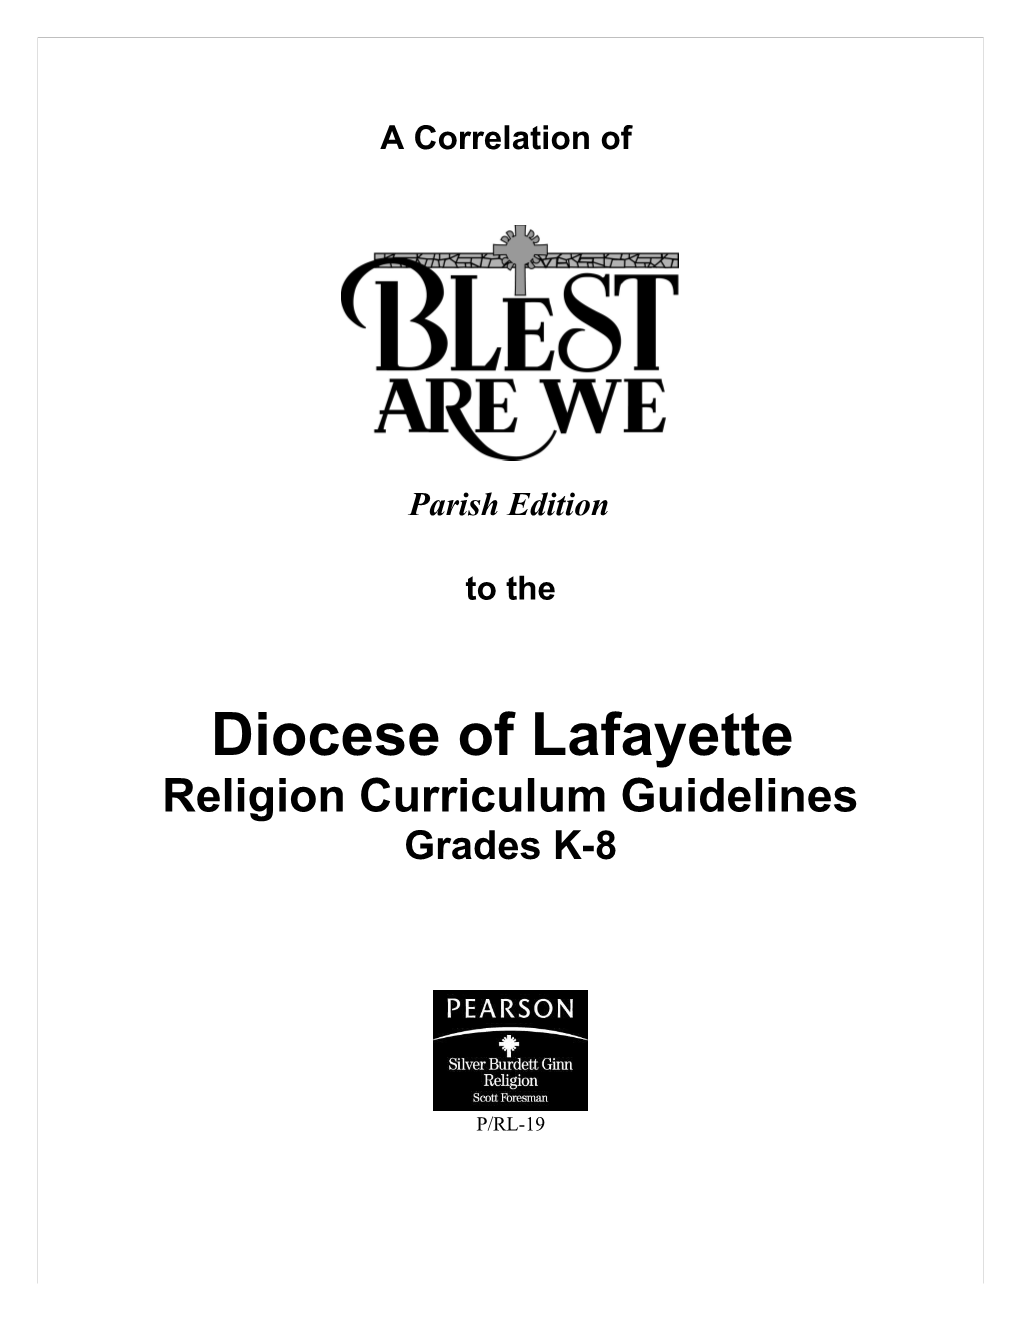 Religion Curriculum Guidelines